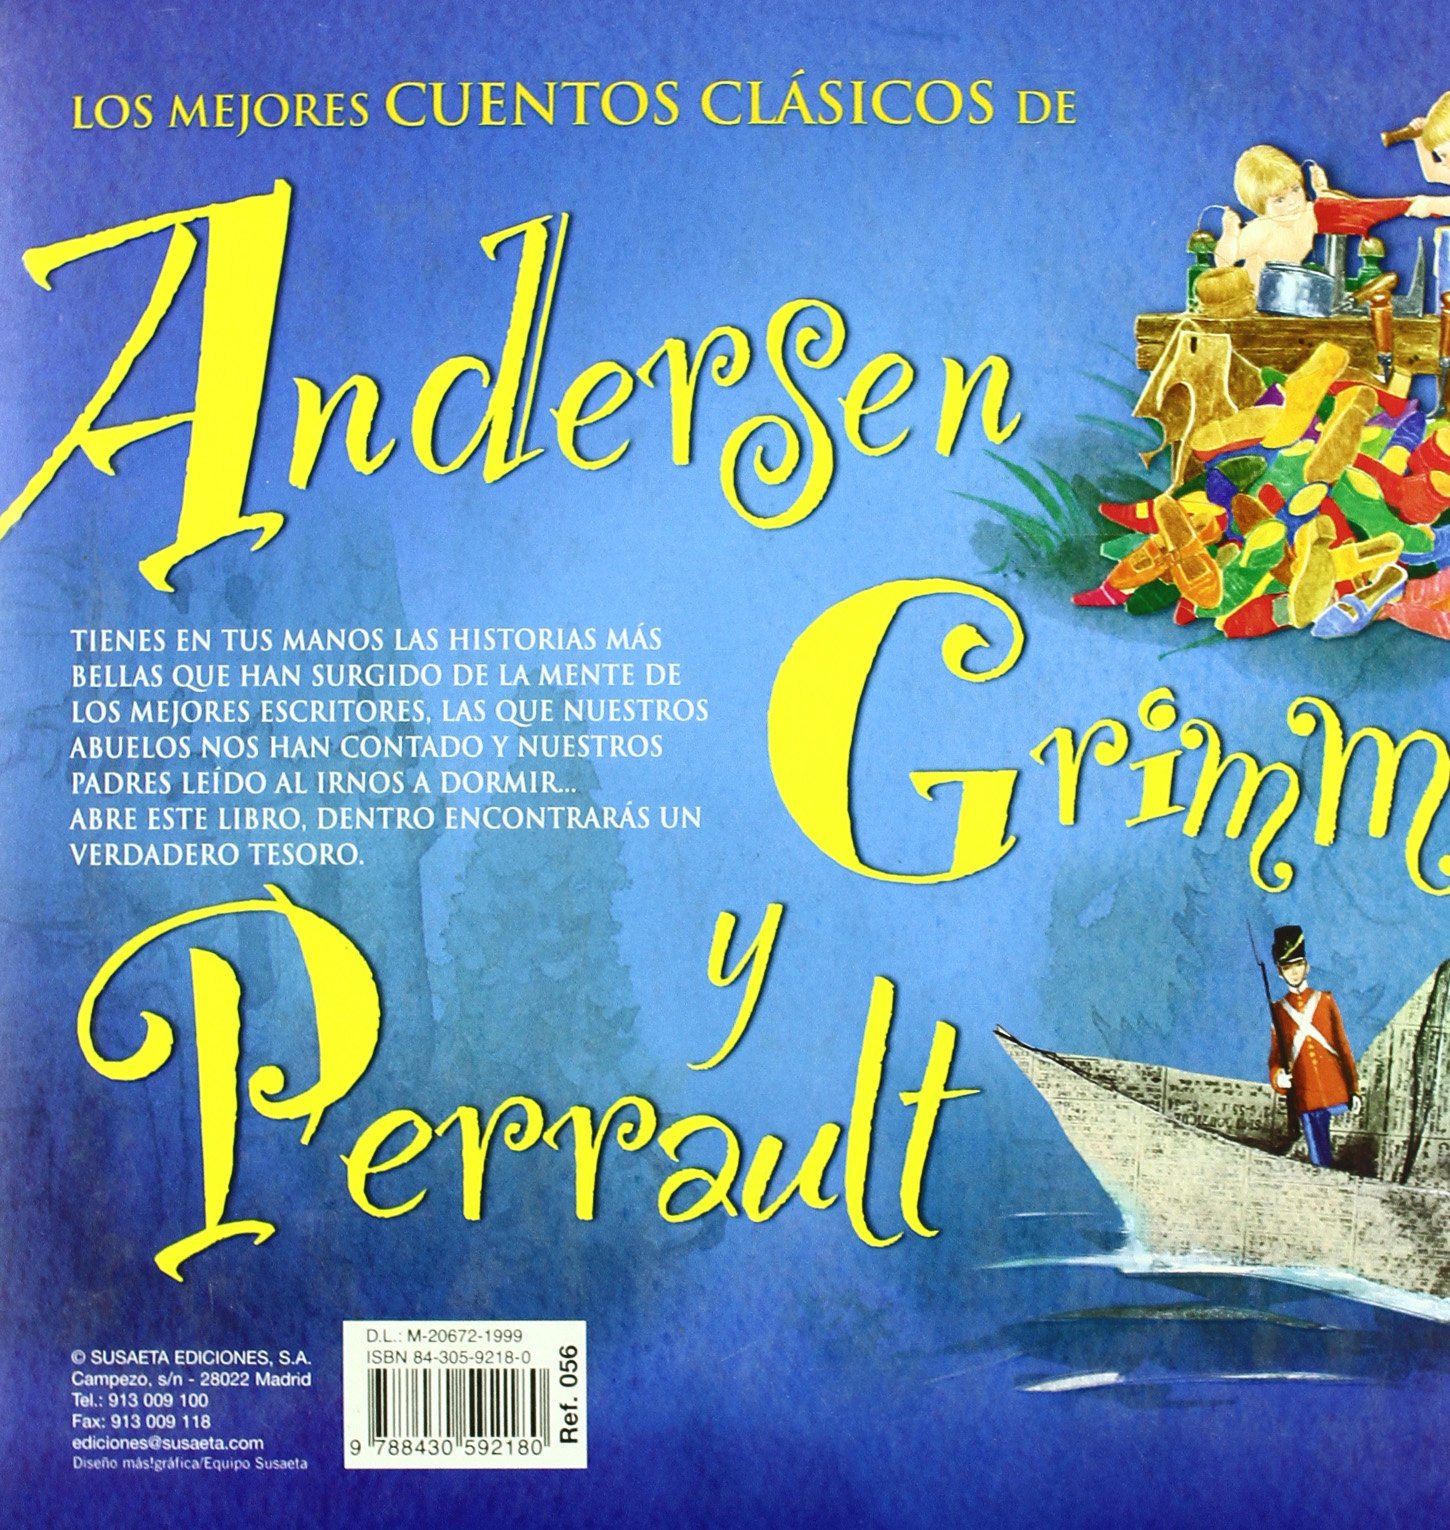 Libro: Los mejores cuentos clásicos de Andersen, Grimm y Perrault por Charles Perrault